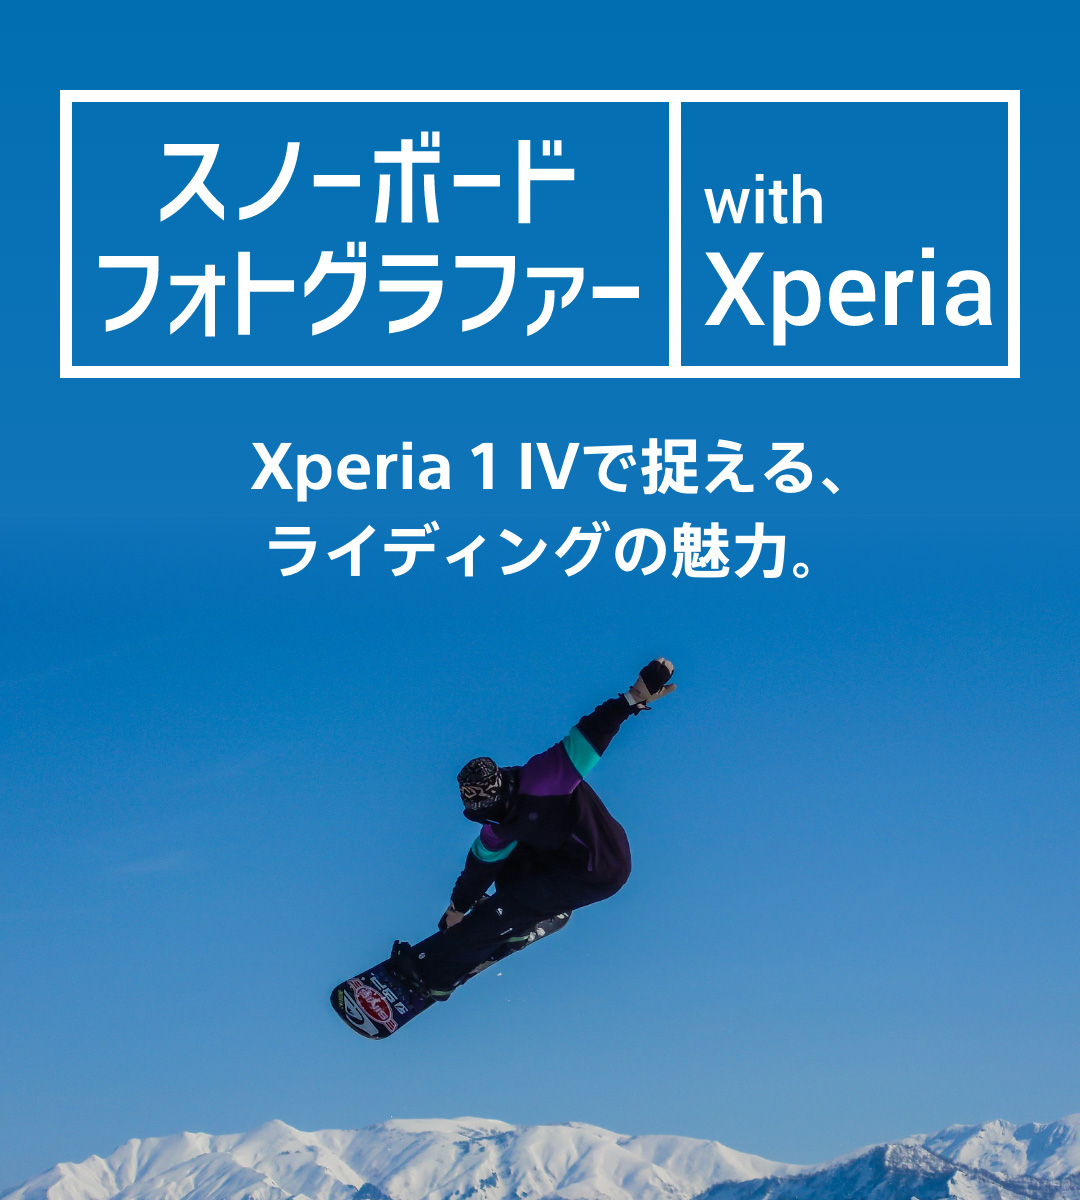 スノーボードフォトグラファー with Xperia IVで捉える、ライディングの魅力。